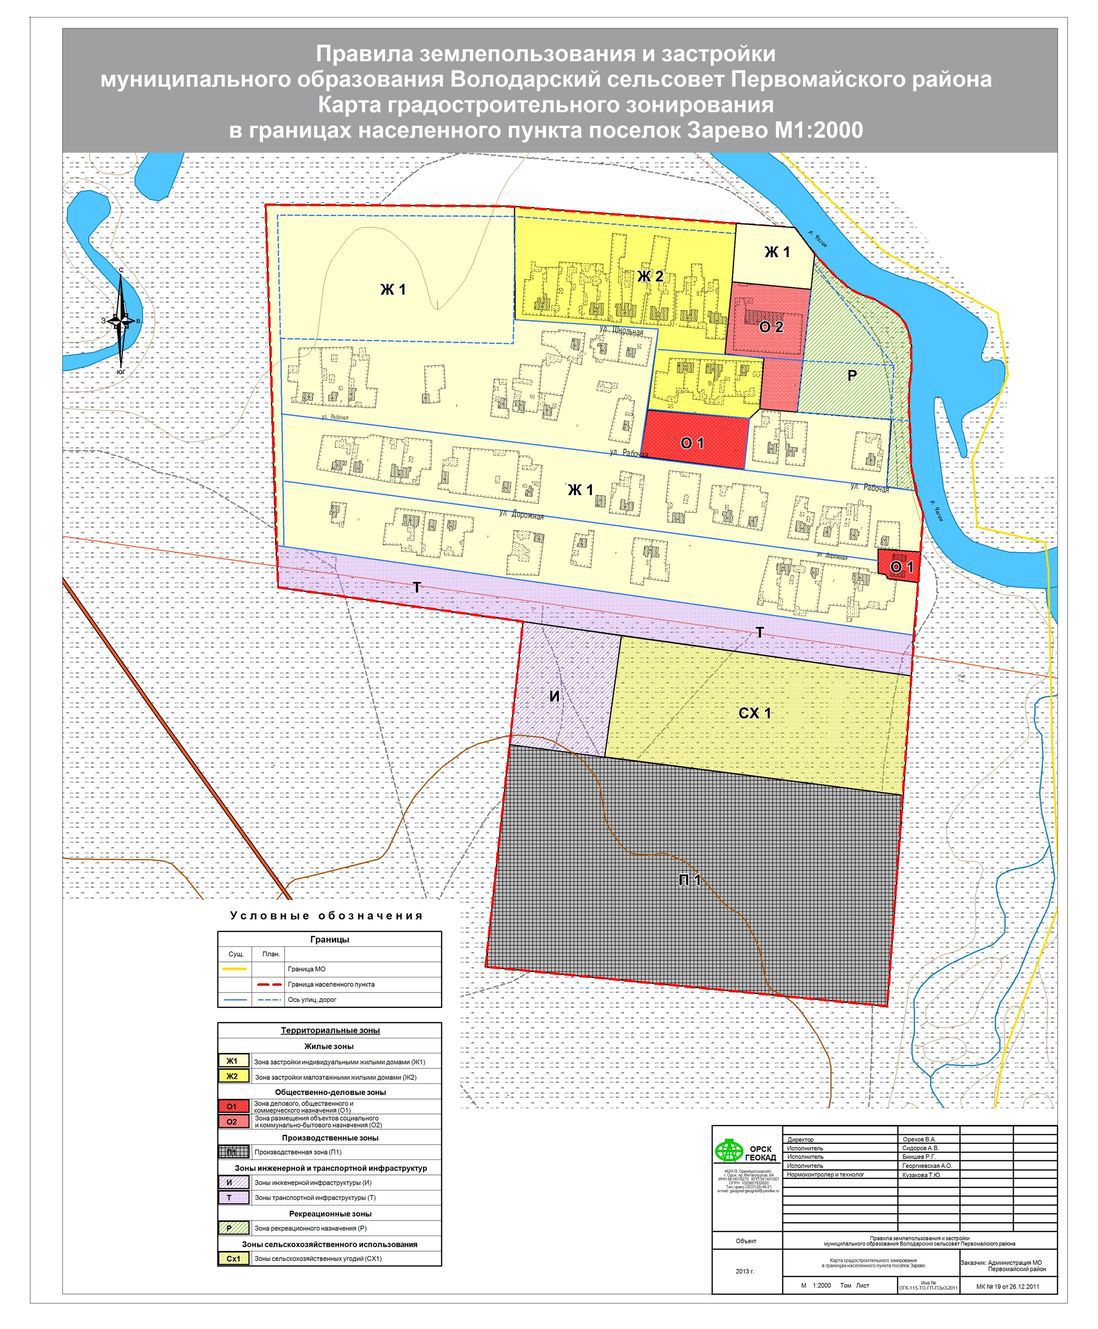 Карта градостроительного зонирования в границах населенного пункта п. Зарево